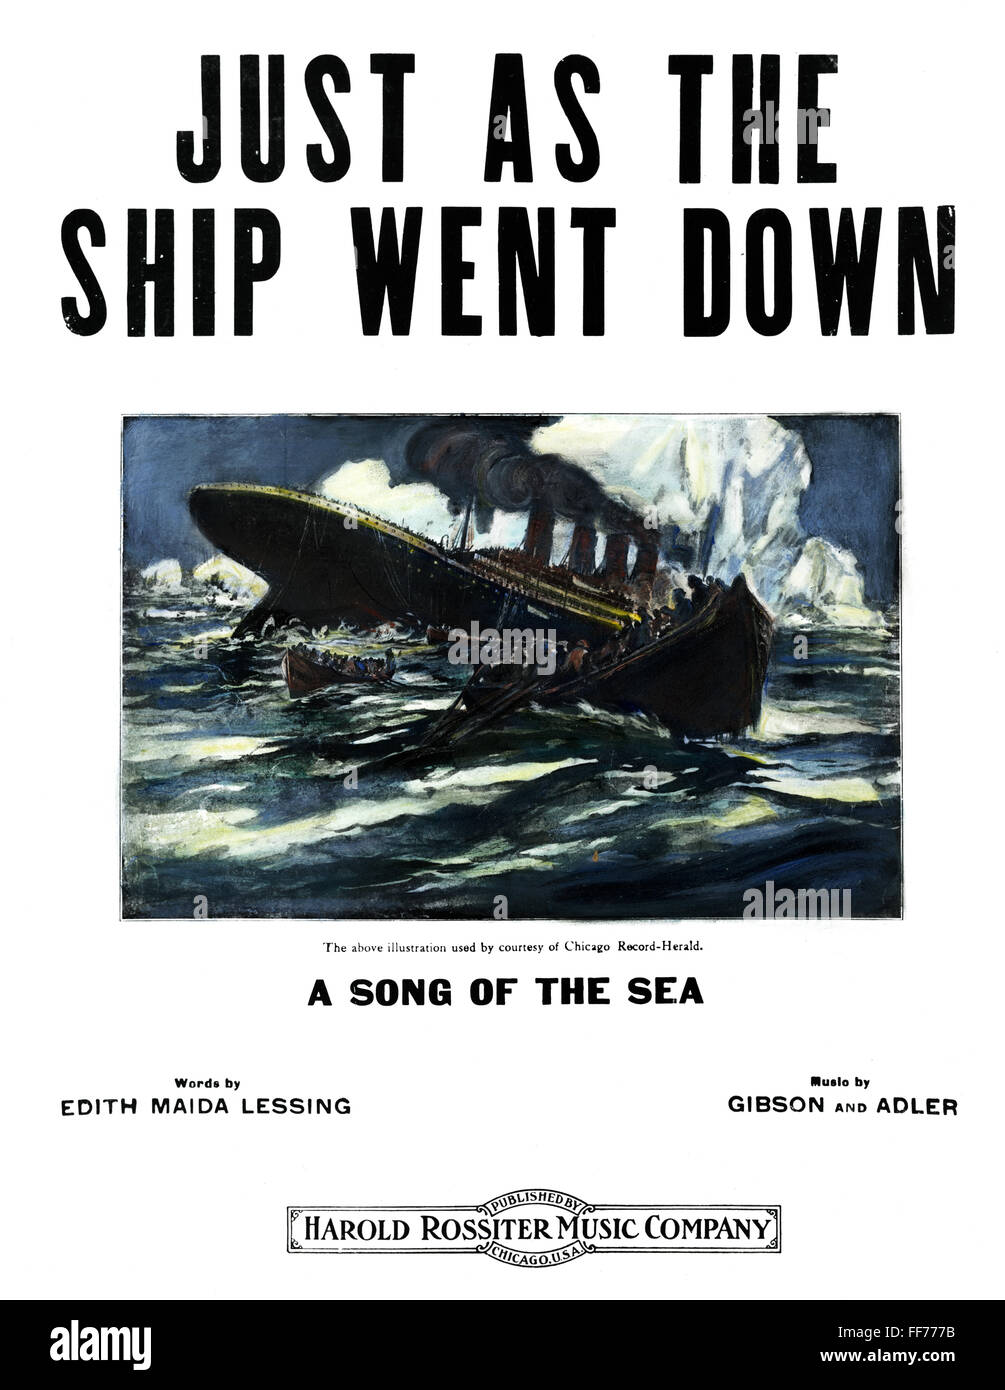 Fiche de la chanson TITANIC, 1912. /N'tout comme du naufrage." Couverture de American Sheet Music publié peu de temps après le naufrage du "Titanic" sur les 14 et 15 avril 1912. Banque D'Images